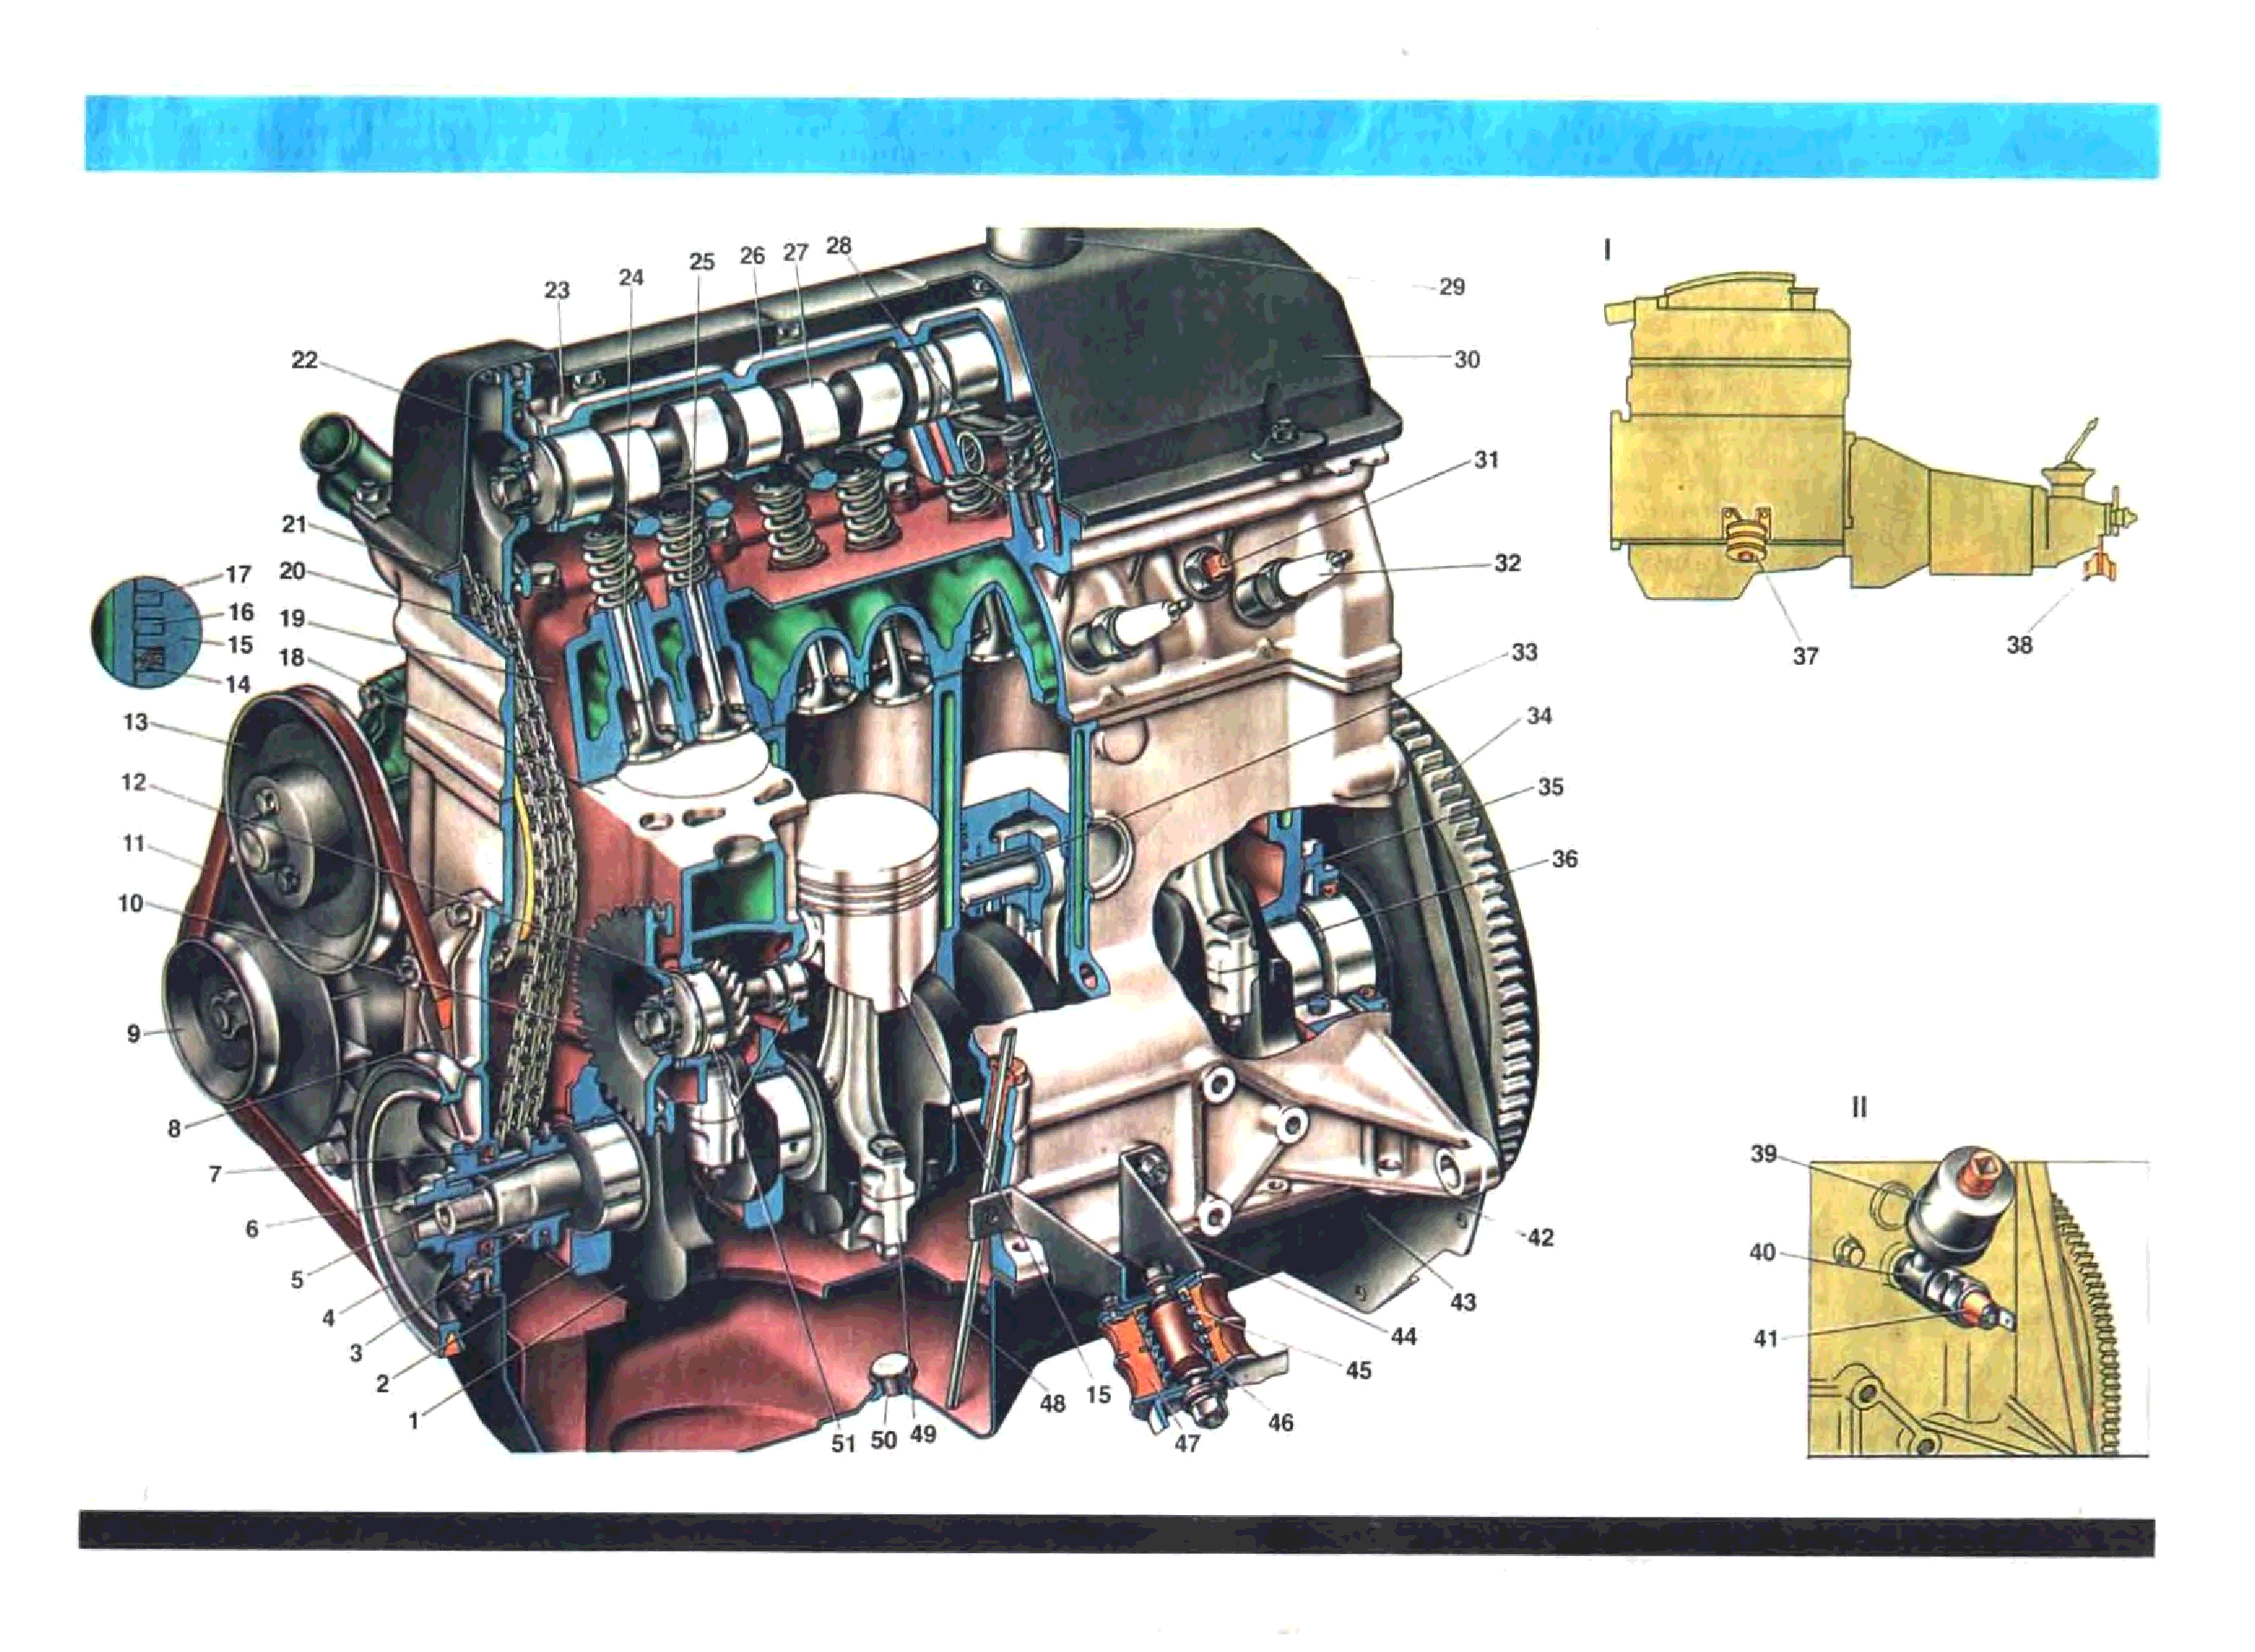 Двигатель ваз 21011, технические характеристики, какое масло лить, ремонт двигателя 21011, доработки и тюнинг, схема устройства, рекомендации по обслуживанию